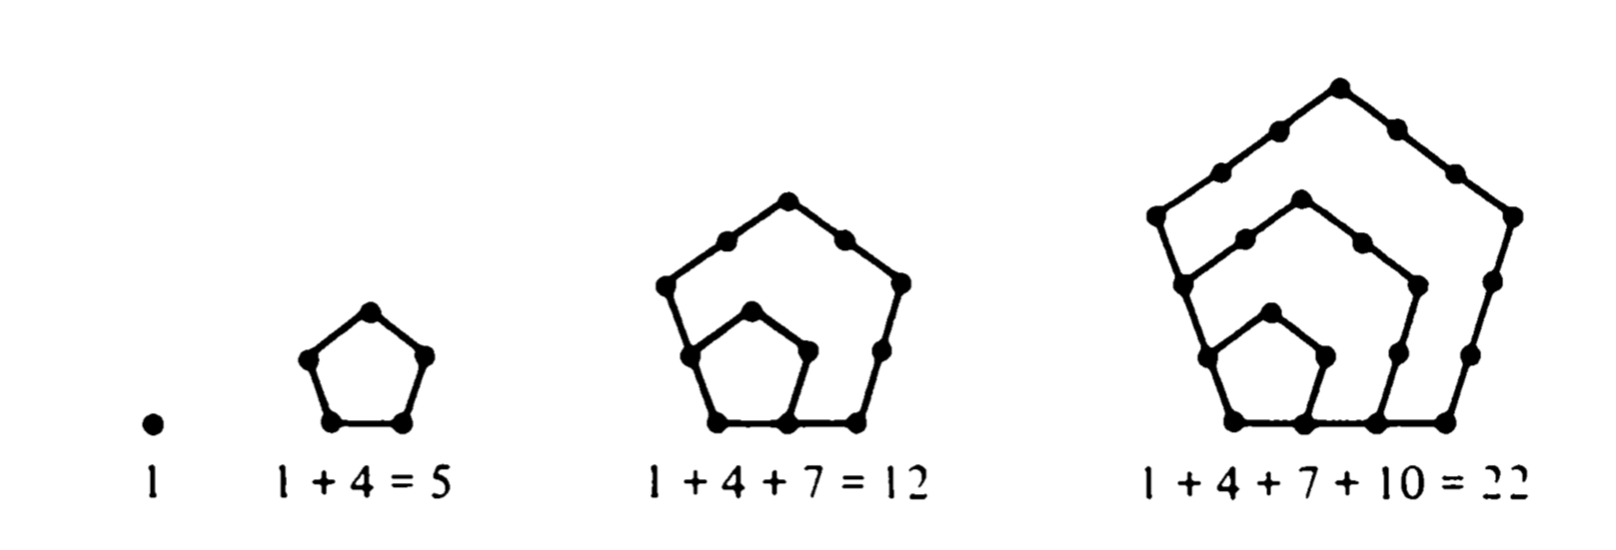 Pentagonal numbers